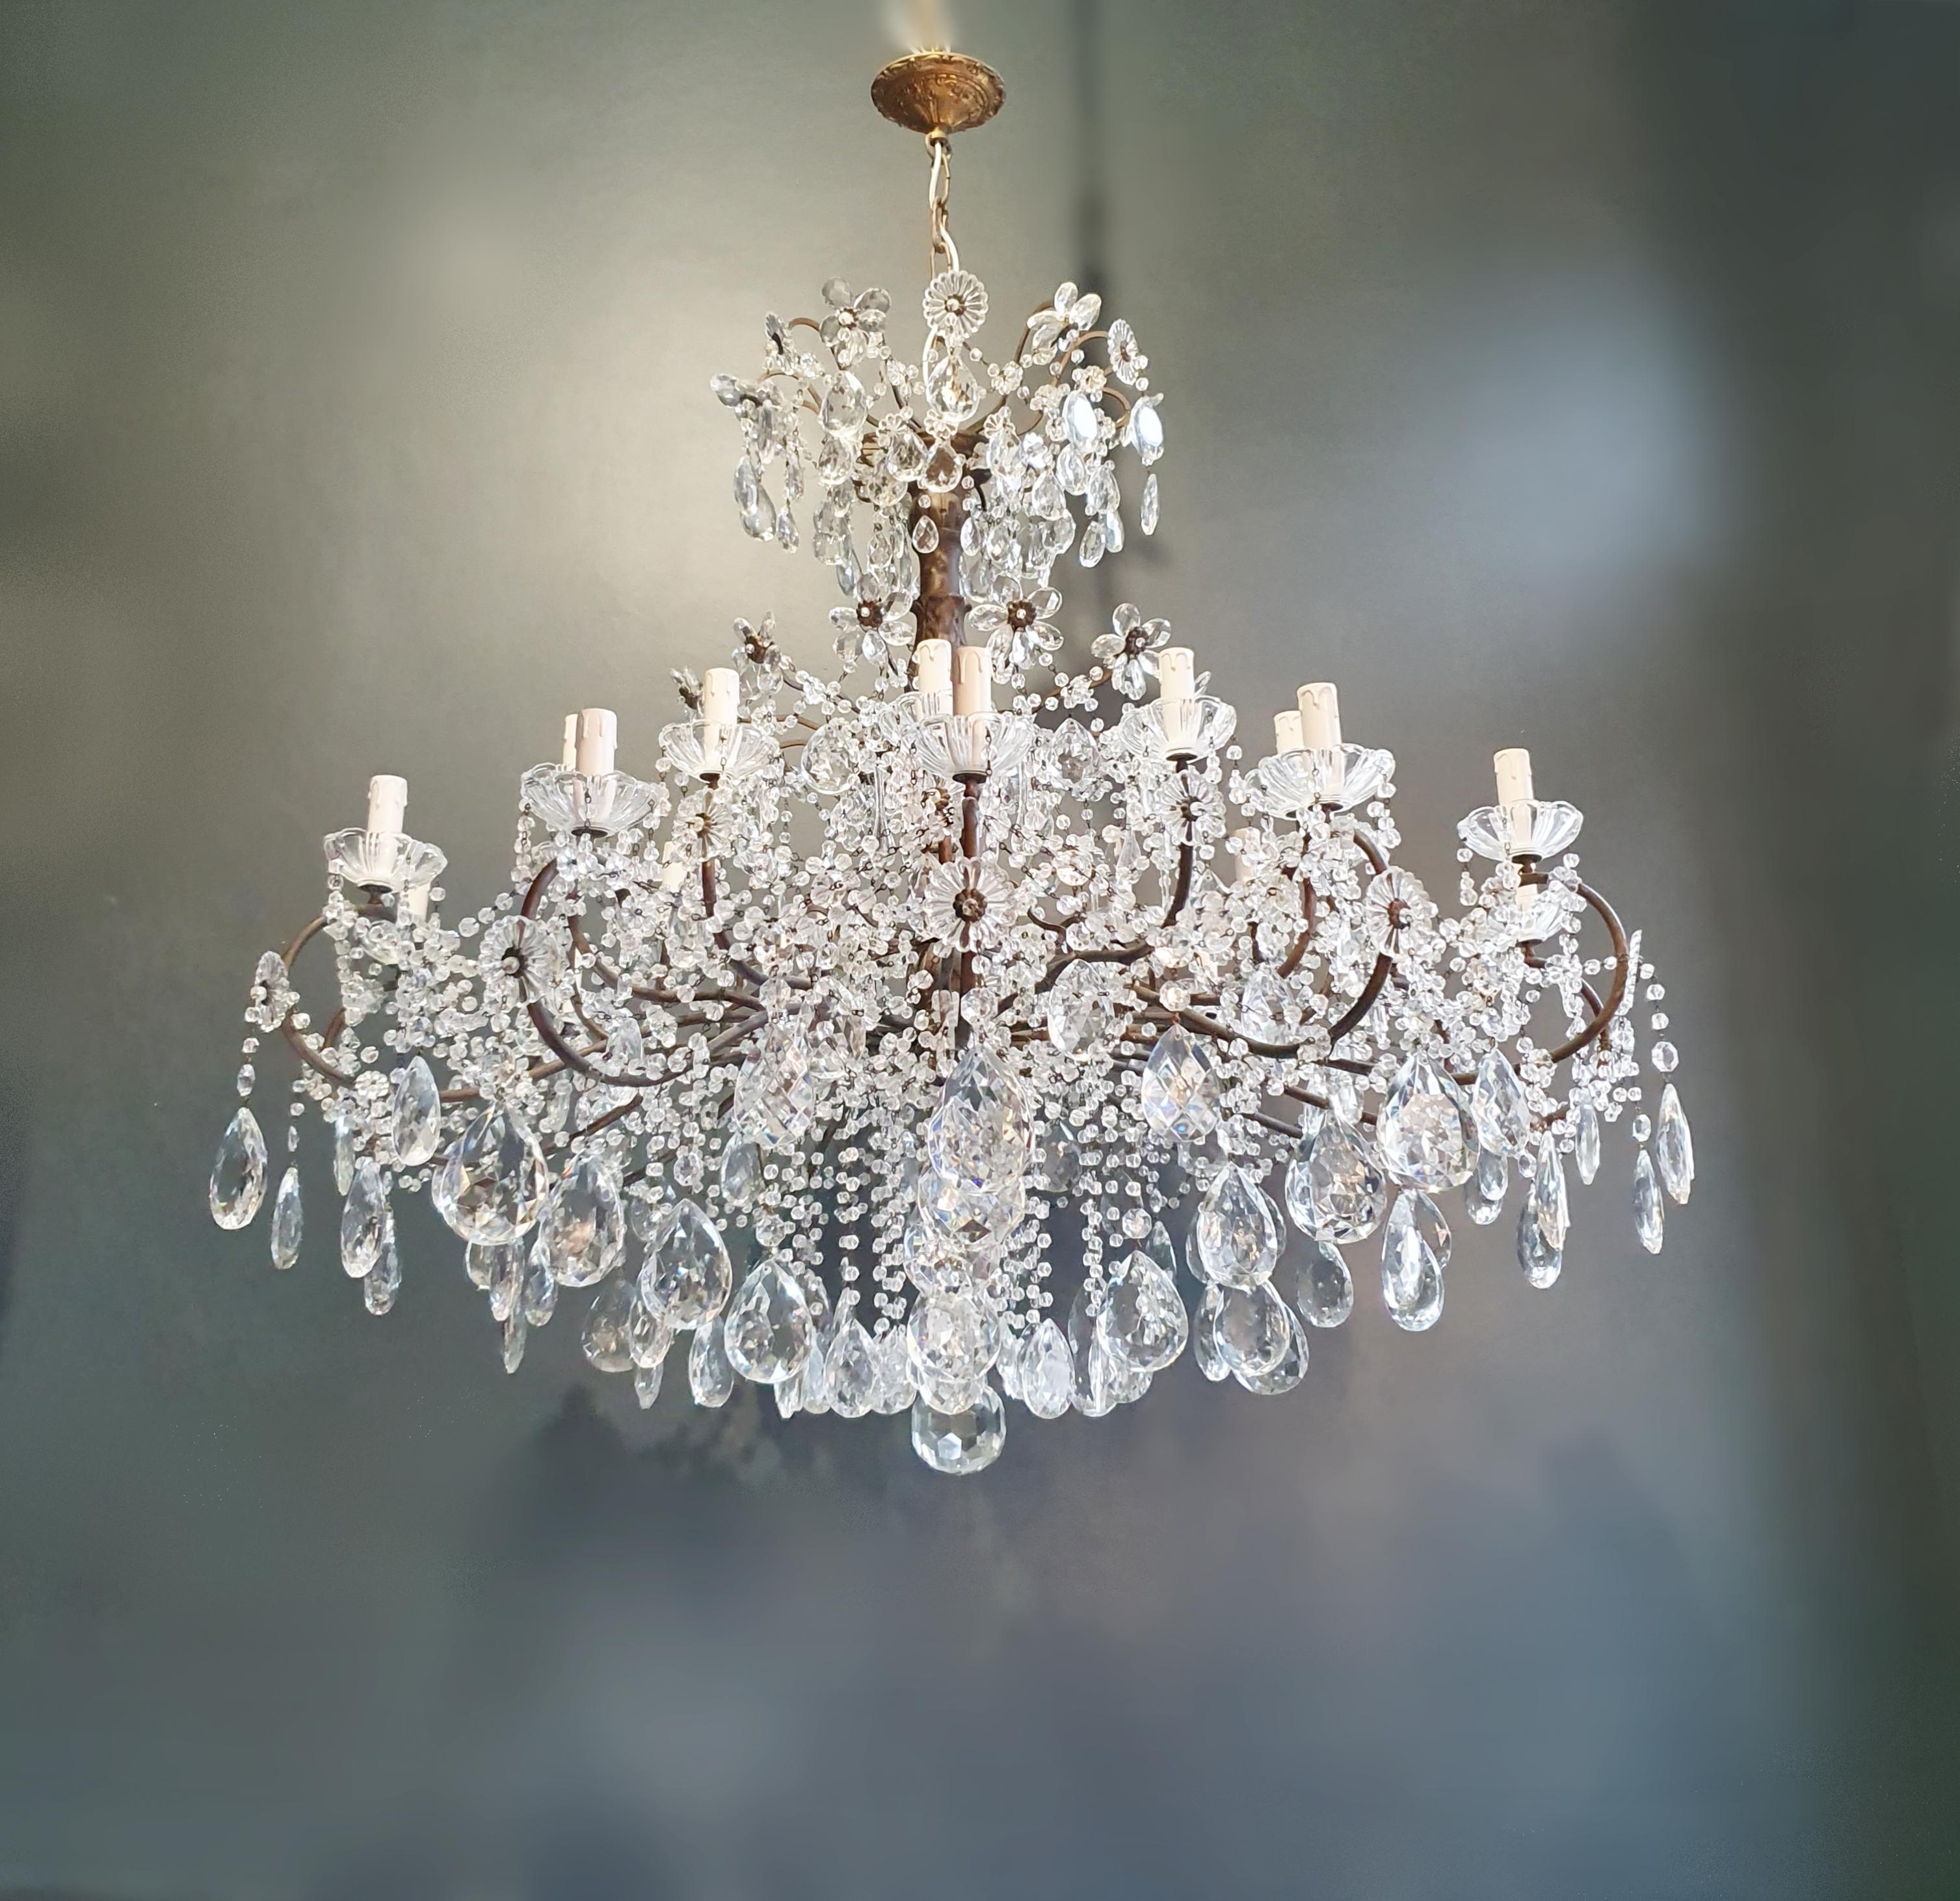 Huge Candelabrum Crystal Antique Chandelier Ceiling Lustre Art Nouveau For Sale 2